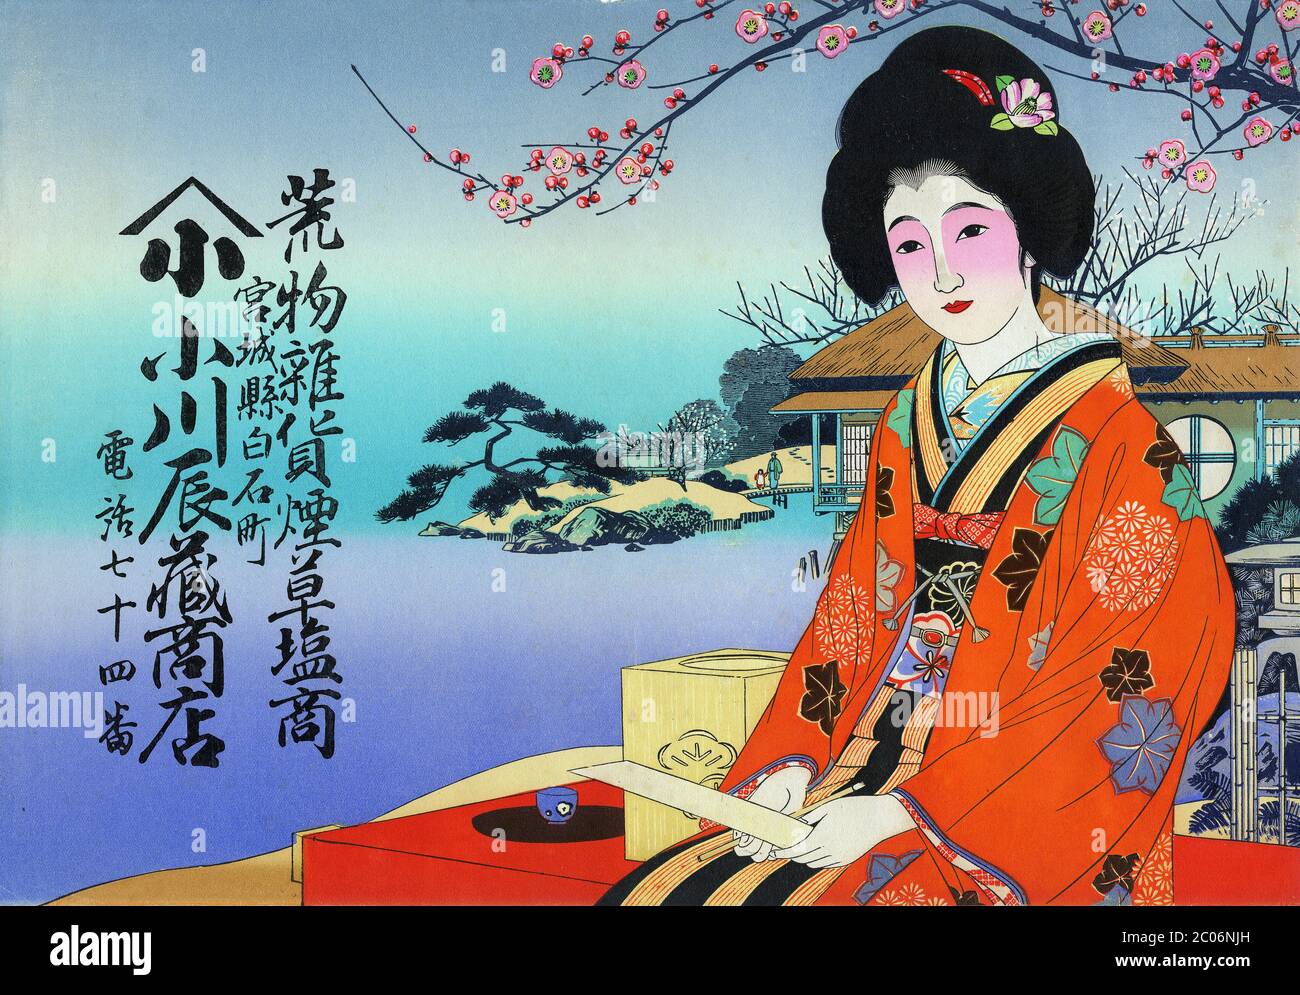 [ années 1920 Japon - Femme japonaise dans Orange Kimono ] — Hikifuda (引札), un imprimé utilisé comme prospectus publicitaire par les magasins locaux. Ils étaient populaires du XIXe siècle aux années 1920. Il montre une japonaise dans un magnifique kimono orange sous la fleur de cerisier. Elle tient un pinceau et un tanzaku (短冊), une étroite bande de papier sur laquelle sont écrits des poèmes japonais. Le dépliant fait la publicité de Ogawa Tatsuzo Shoten (小川辰蔵商店). prospectus publicitaire vintage du xxe siècle. Banque D'Images